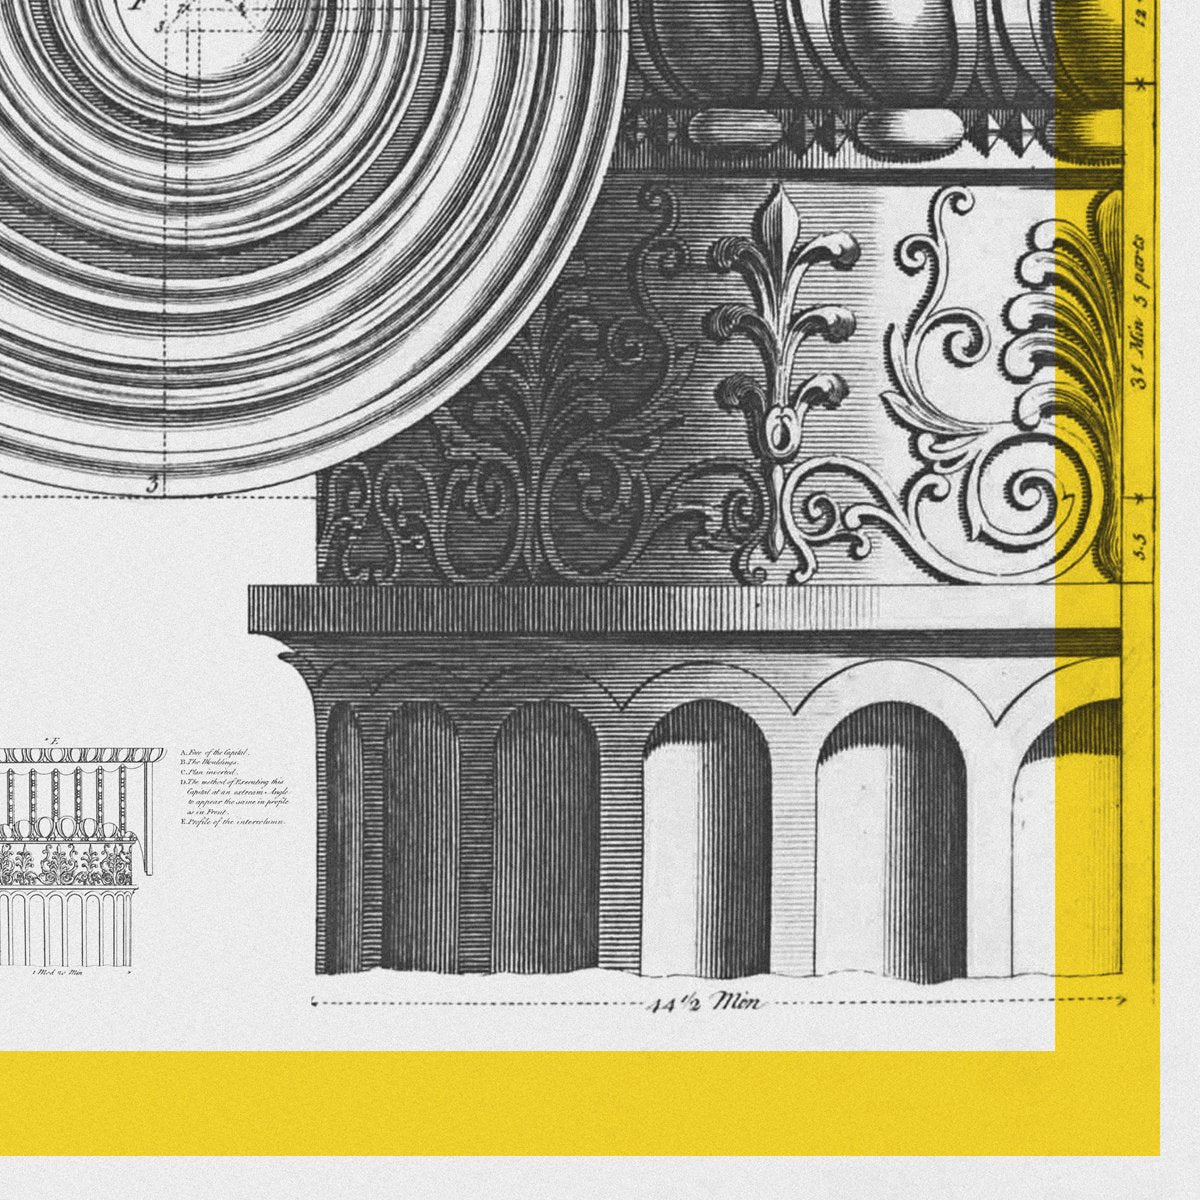 Capitello Ionico Romano Architecture Poster